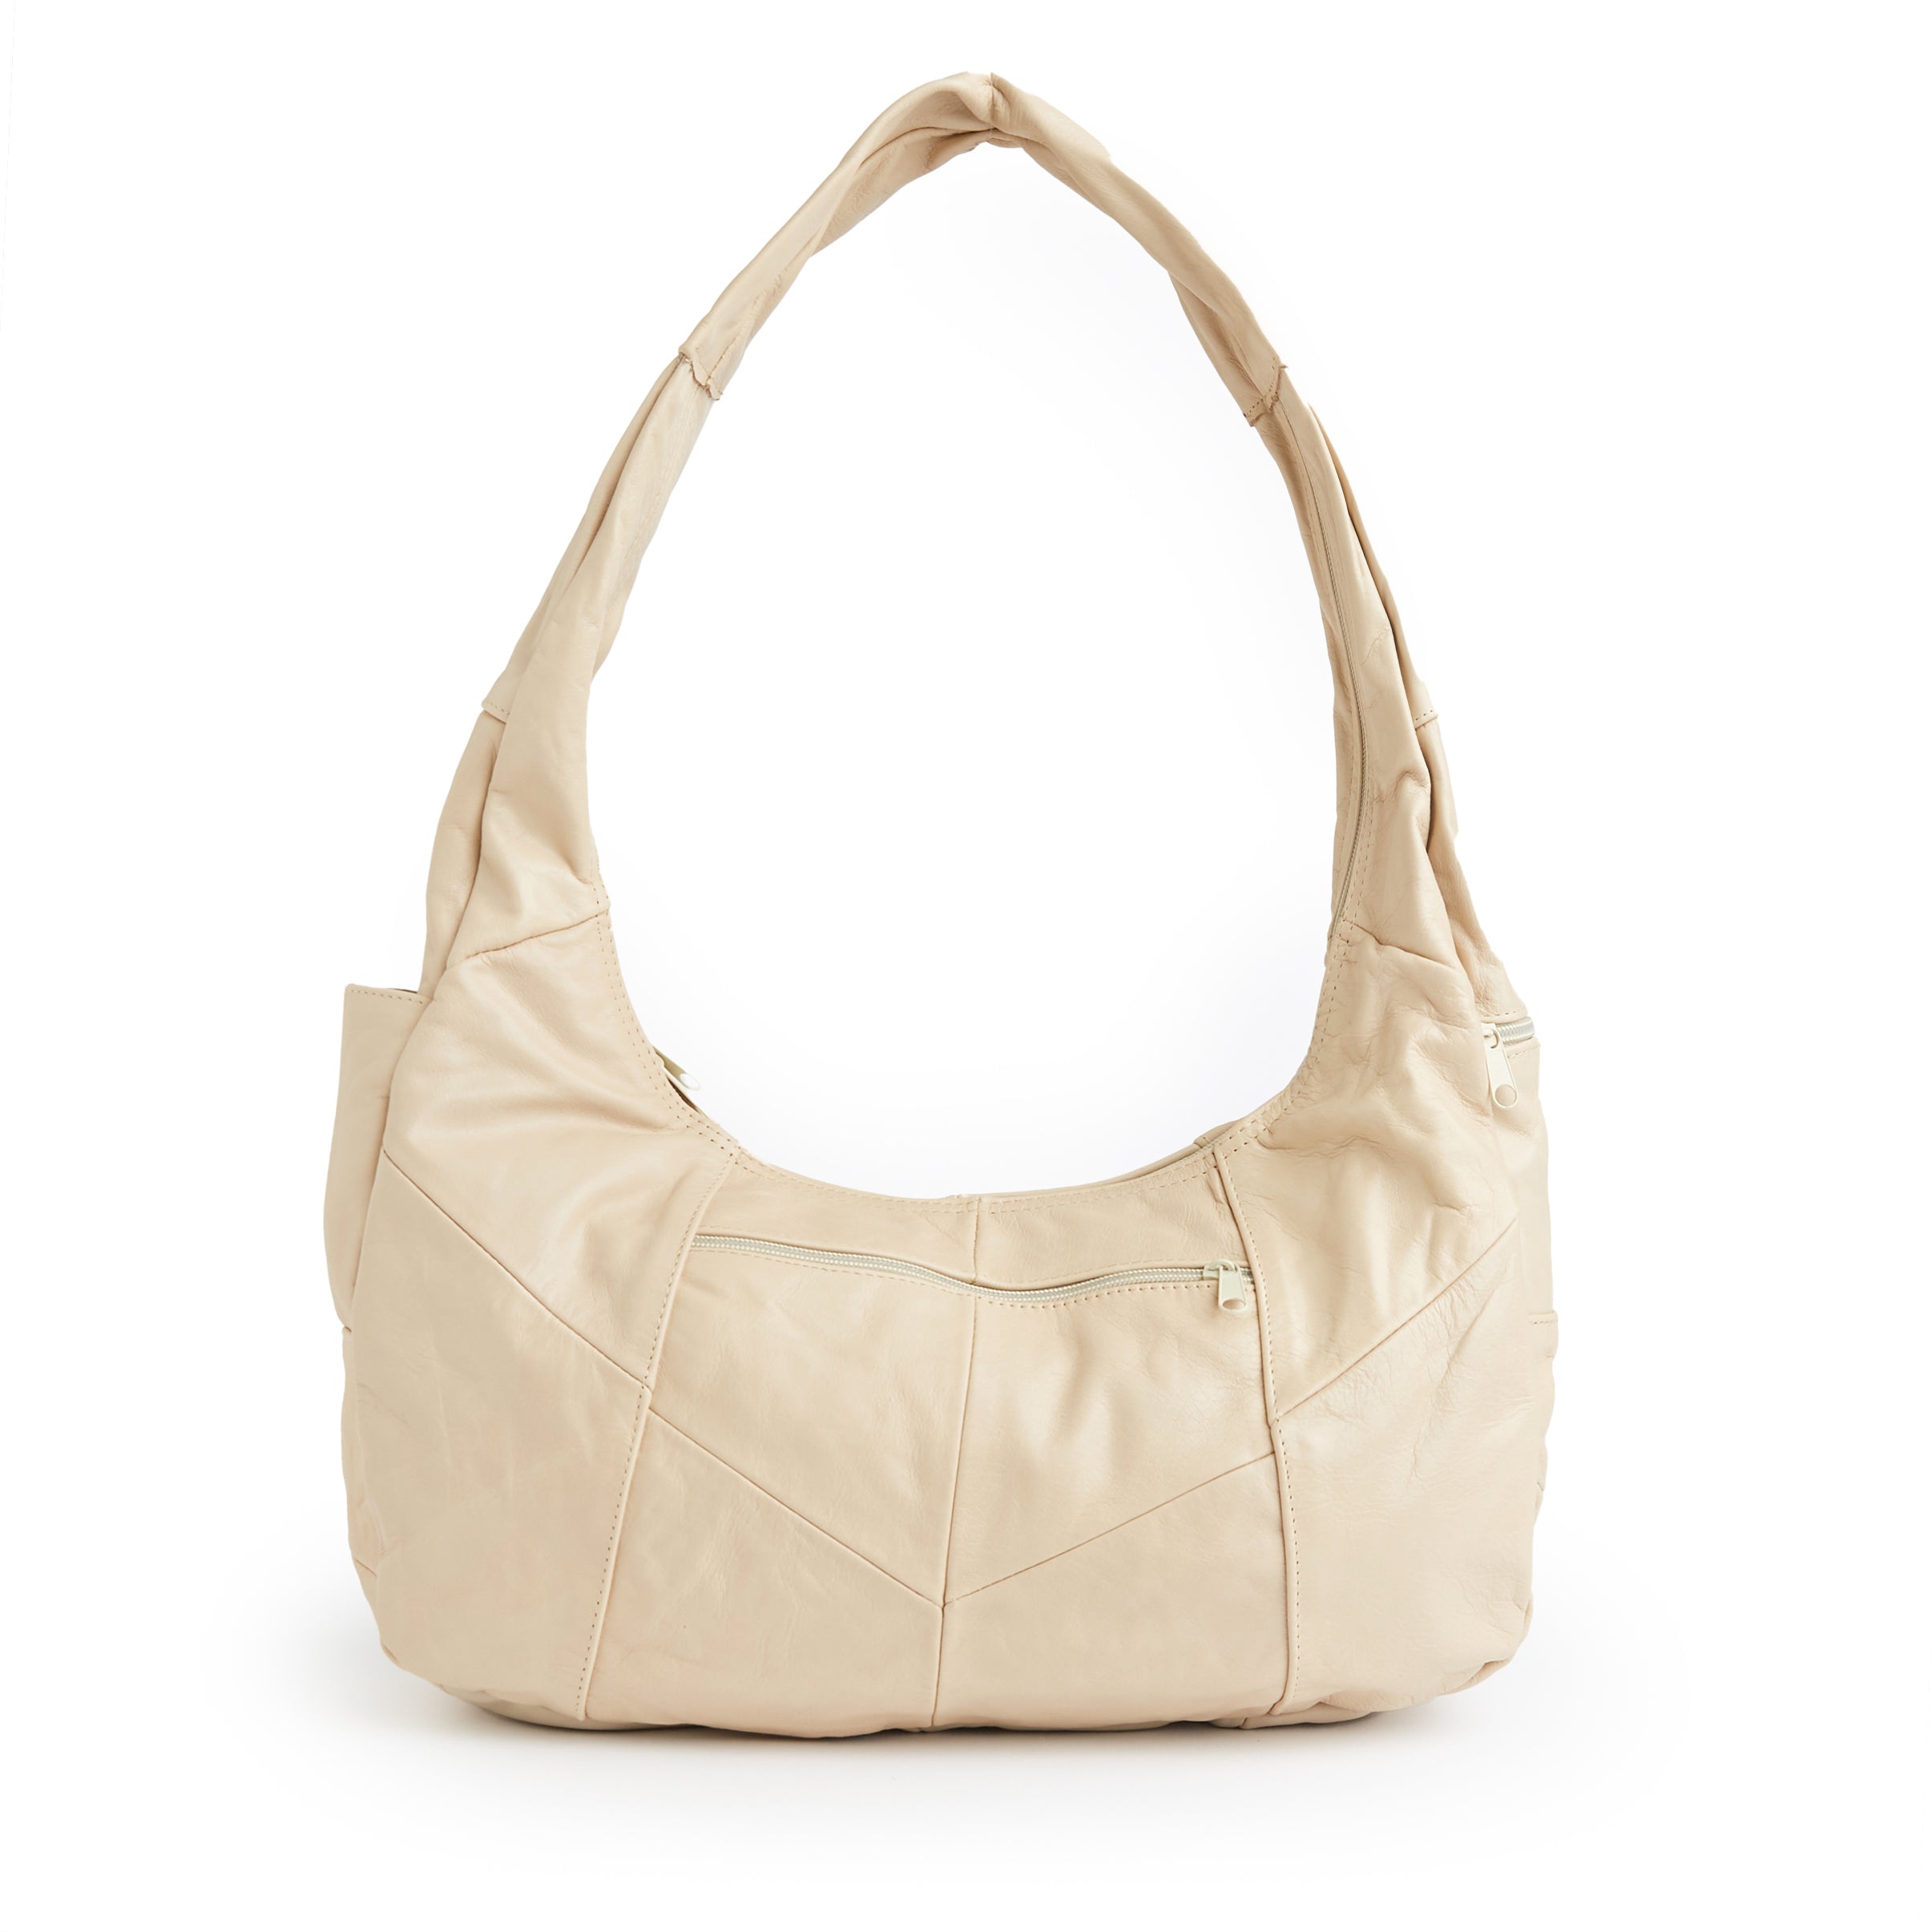 Navy - Large Hobo Bag, Soft Leather Hobo Bag, Soft Lambskin Hobo Bag, Hobo Bag Large, Leather Shoulder Bag, Genuine Leather Hobo Bag